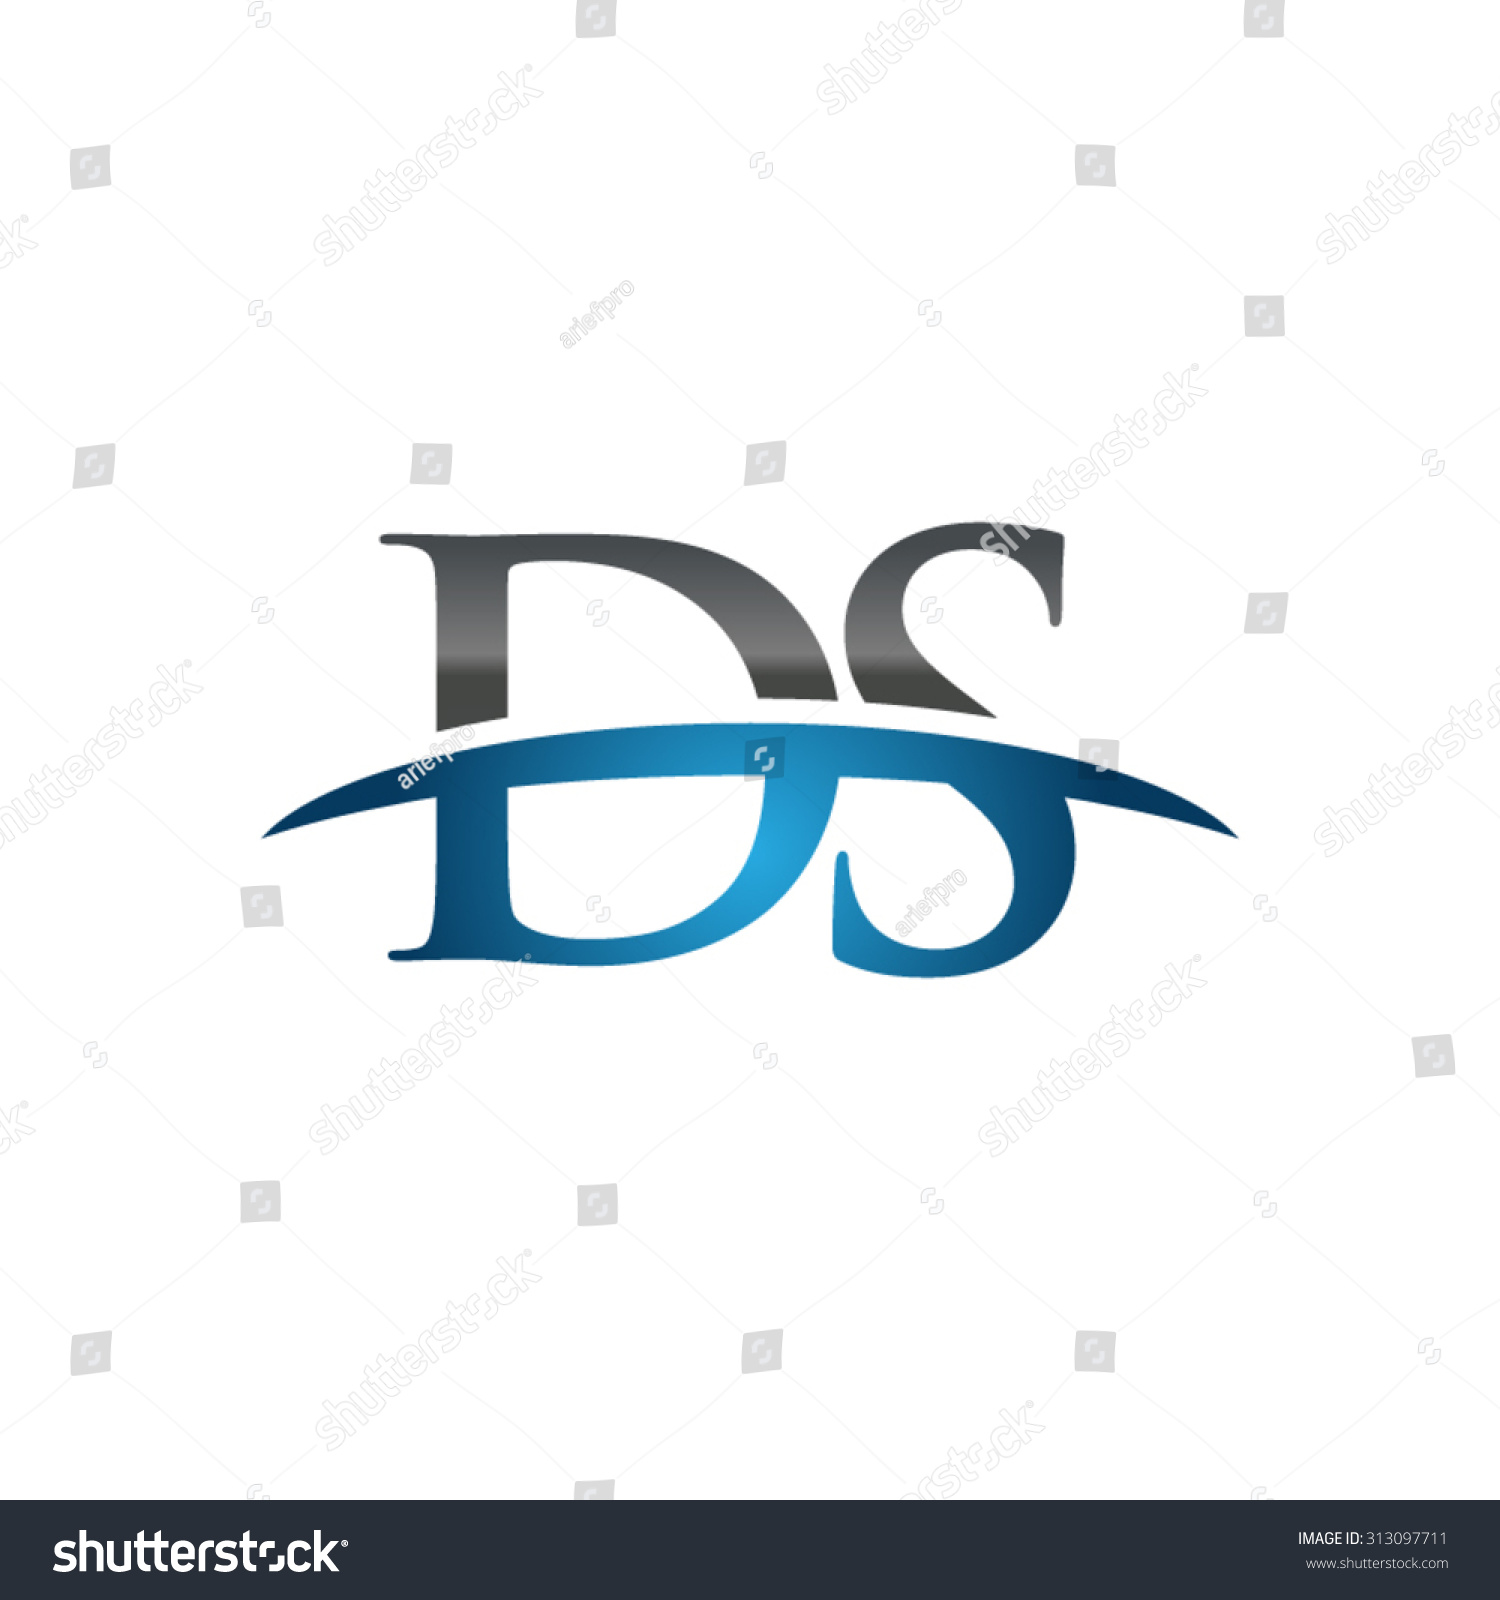 Ds Initial Company Blue Swoosh Logo Illustration vectorielle libre de